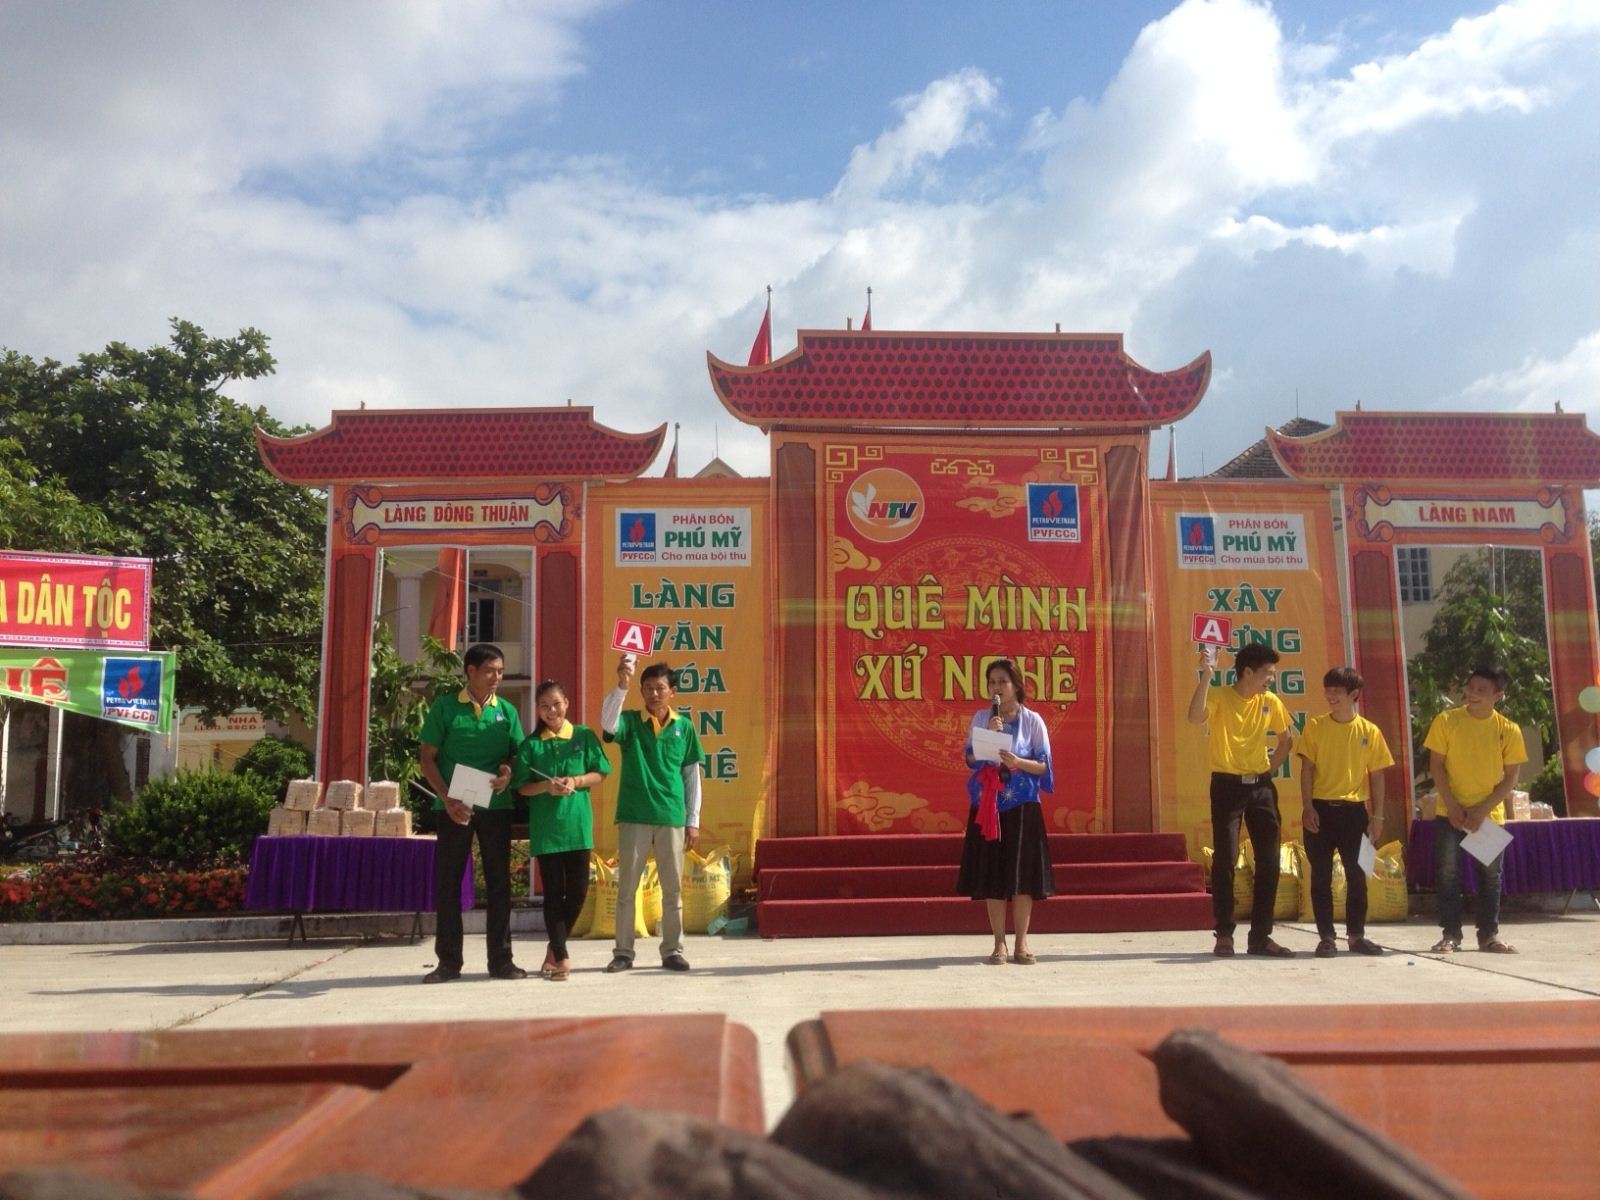 Chương trình “Quê mình xứ Nghệ” số 05 tại xã Nghi Trung, huyện Nghi Lộc, tỉnh Nghệ An.